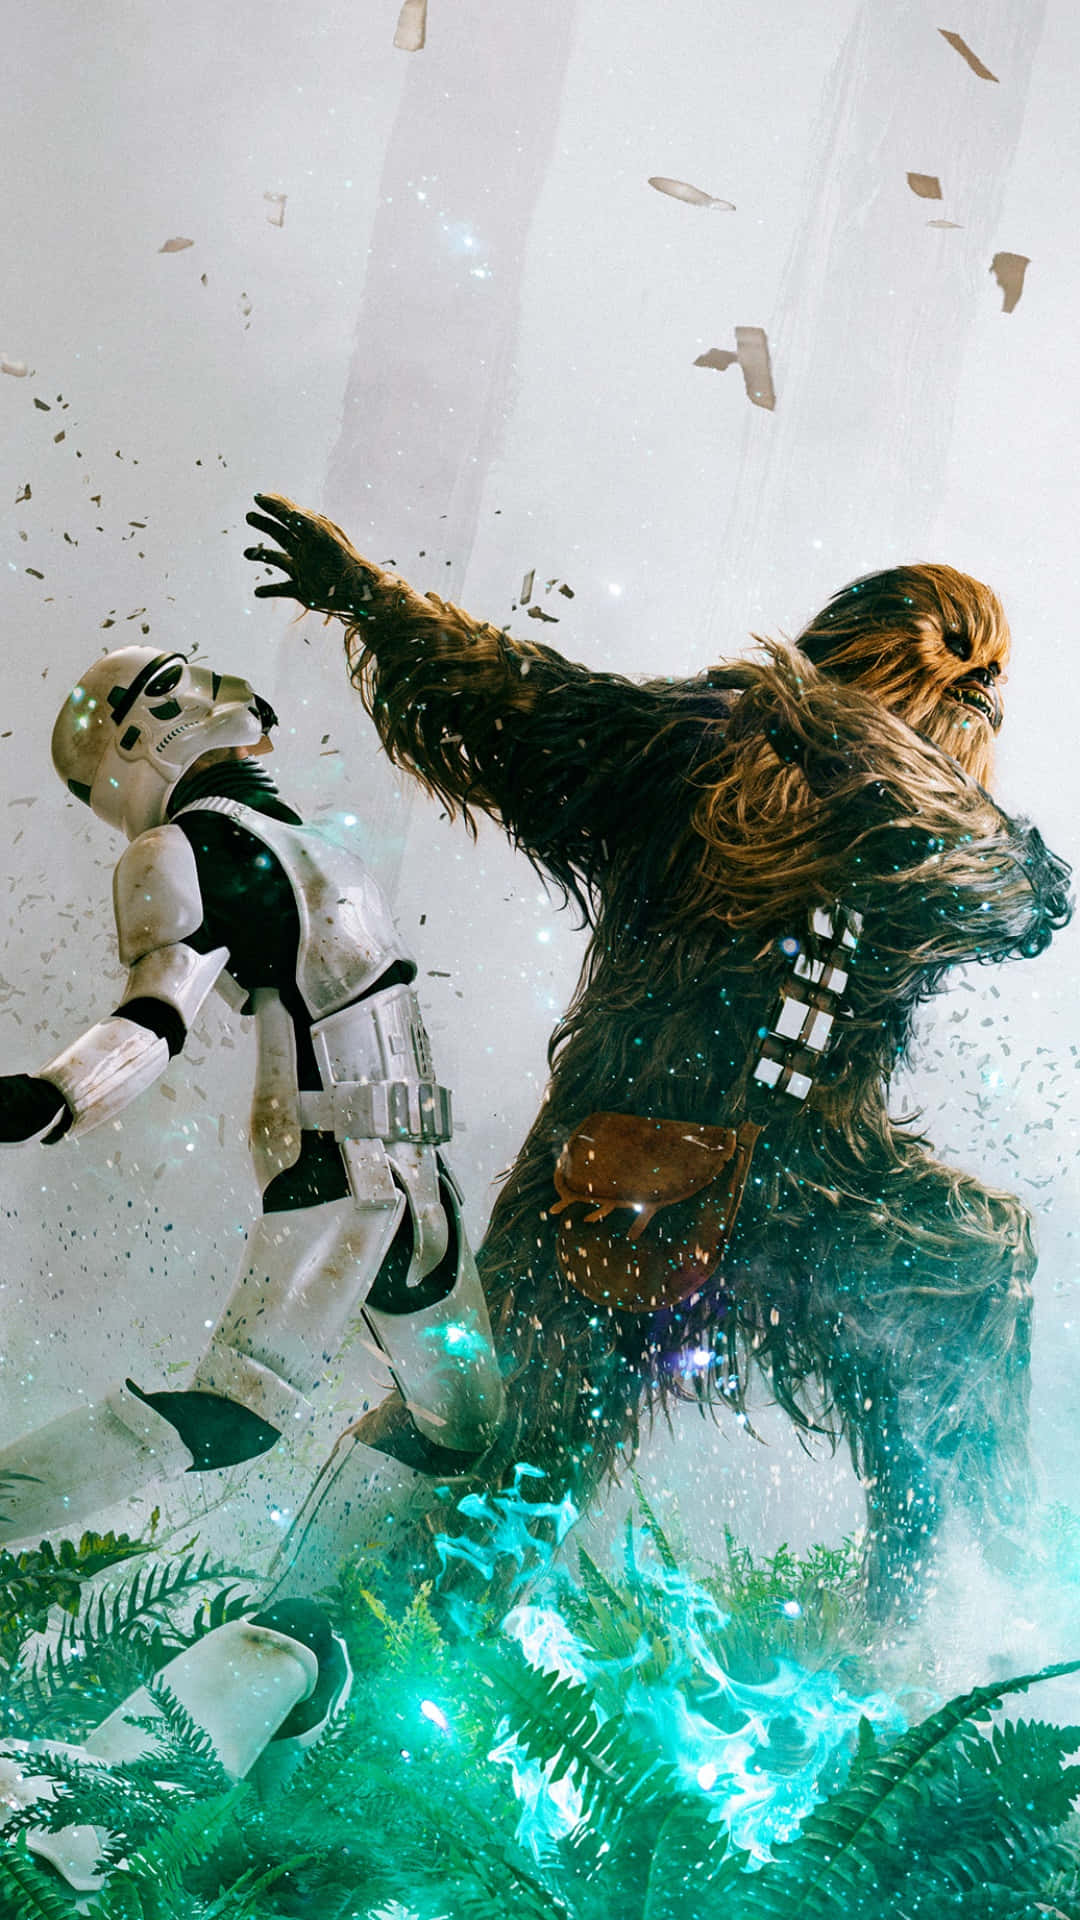 Laicónica Escena De El Retorno Del Jedi Con Luke Skywalker Enfrentando A Darth Vader Y El Emperador Palpatine En Una Épica Batalla De Sables De Luz. Fondo de pantalla